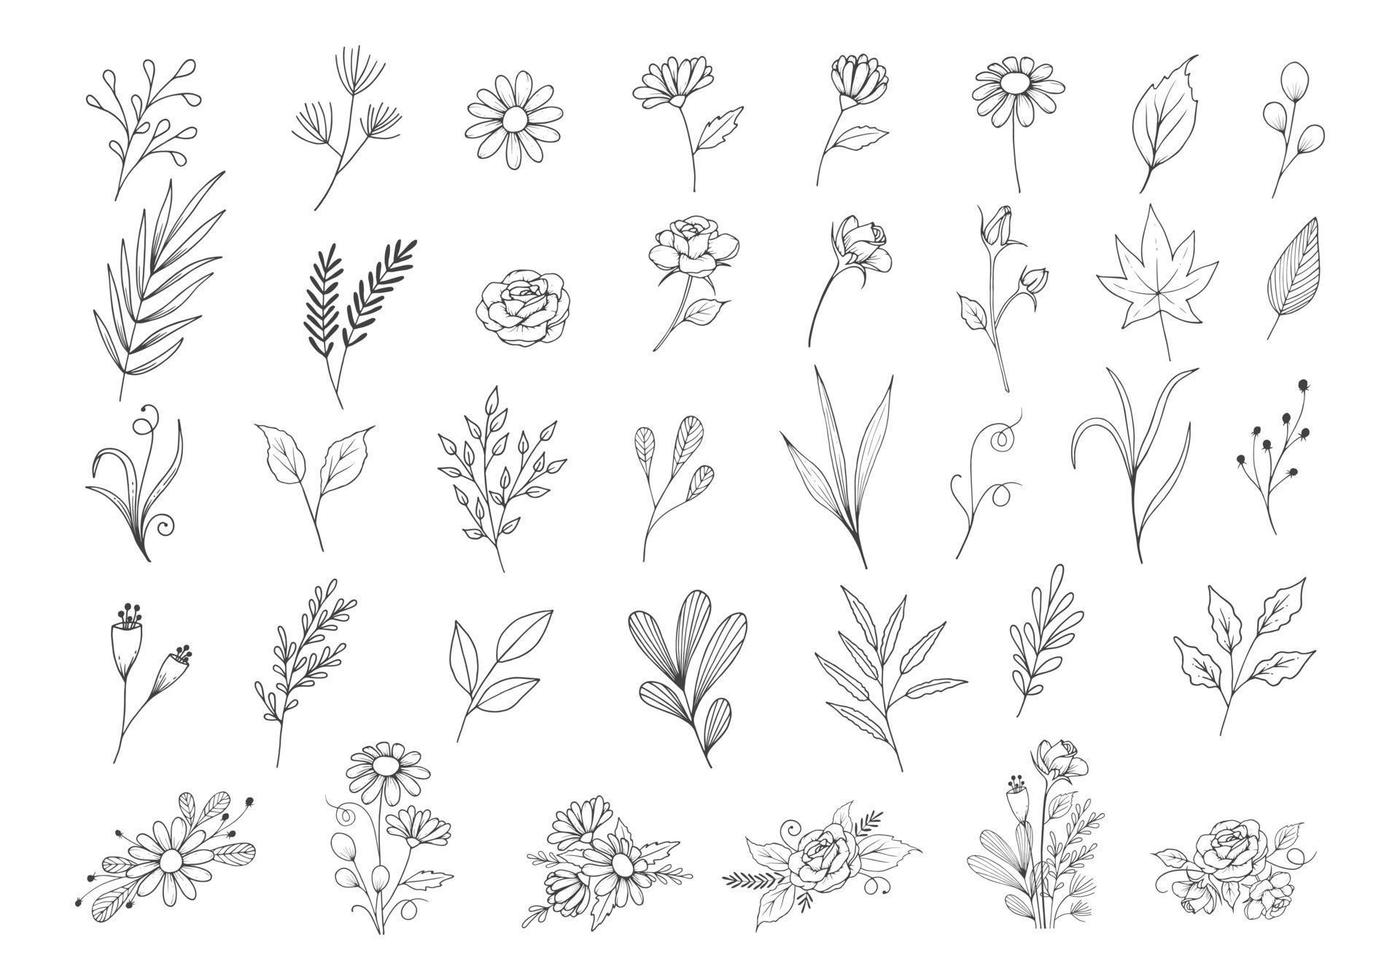 Botanische Sammlung von Wildblumen mit Umrissstil, handgezeichneten Einzel- und Arrangements, Blumencliparts, Blätter, Rose, Gänseblümchen, Laub, Blumenstraußillustration vektor